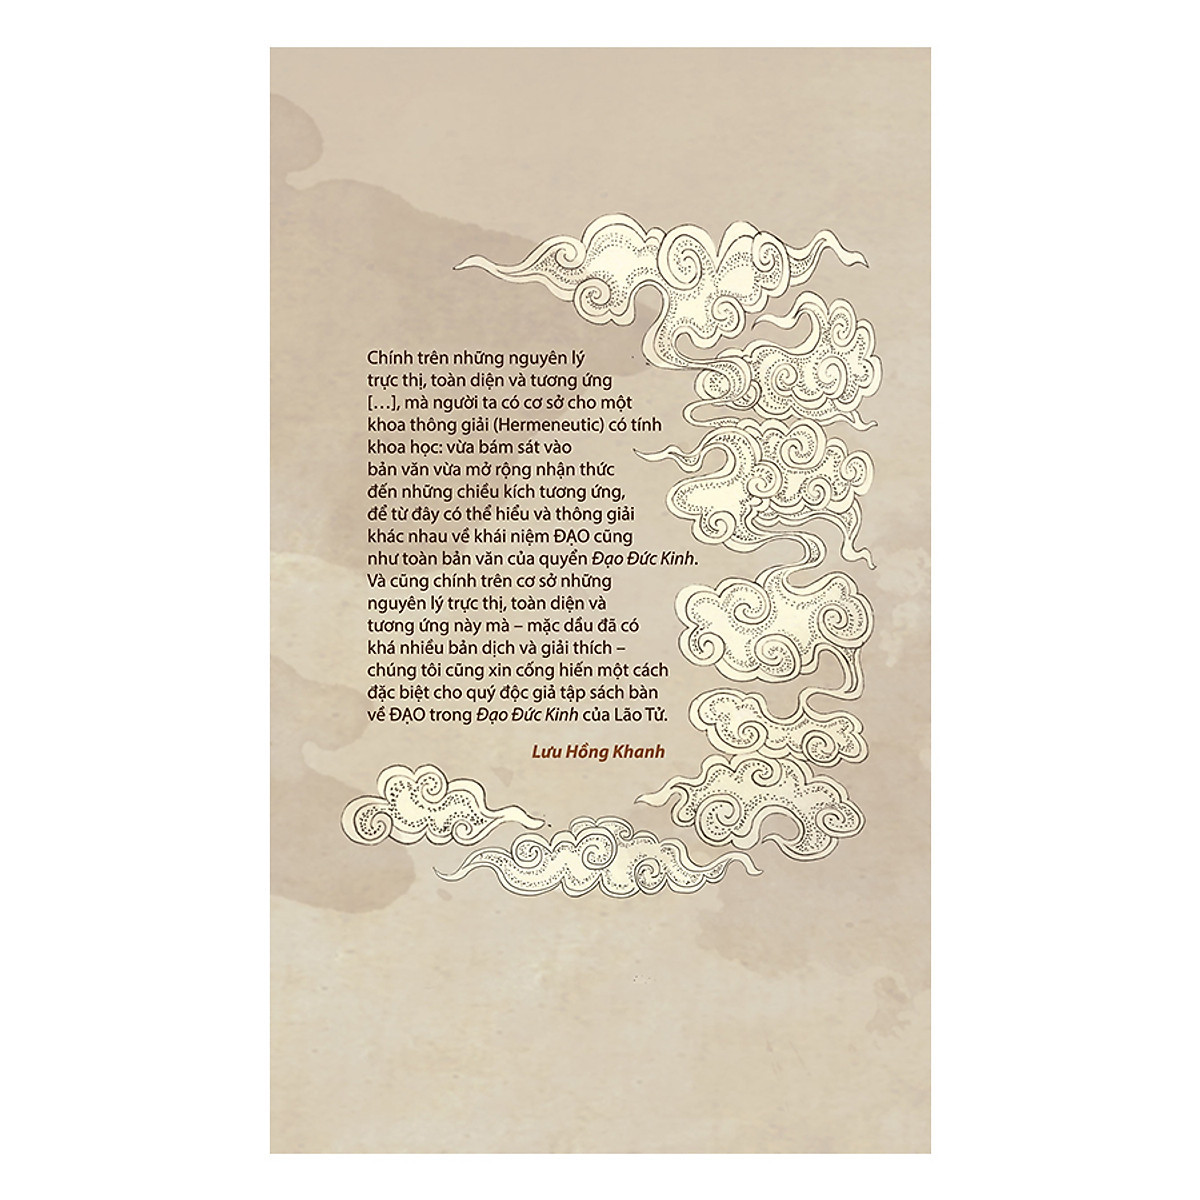 Lão Tử Đạo Đức Kinh - Bản Thể Hiện Tượng Siêu Việt Của Đạo - Lưu Hồng Khanh - (bìa mềm) - (giấy thô, vàng viền nhẹ, cân nhắc khi mua)